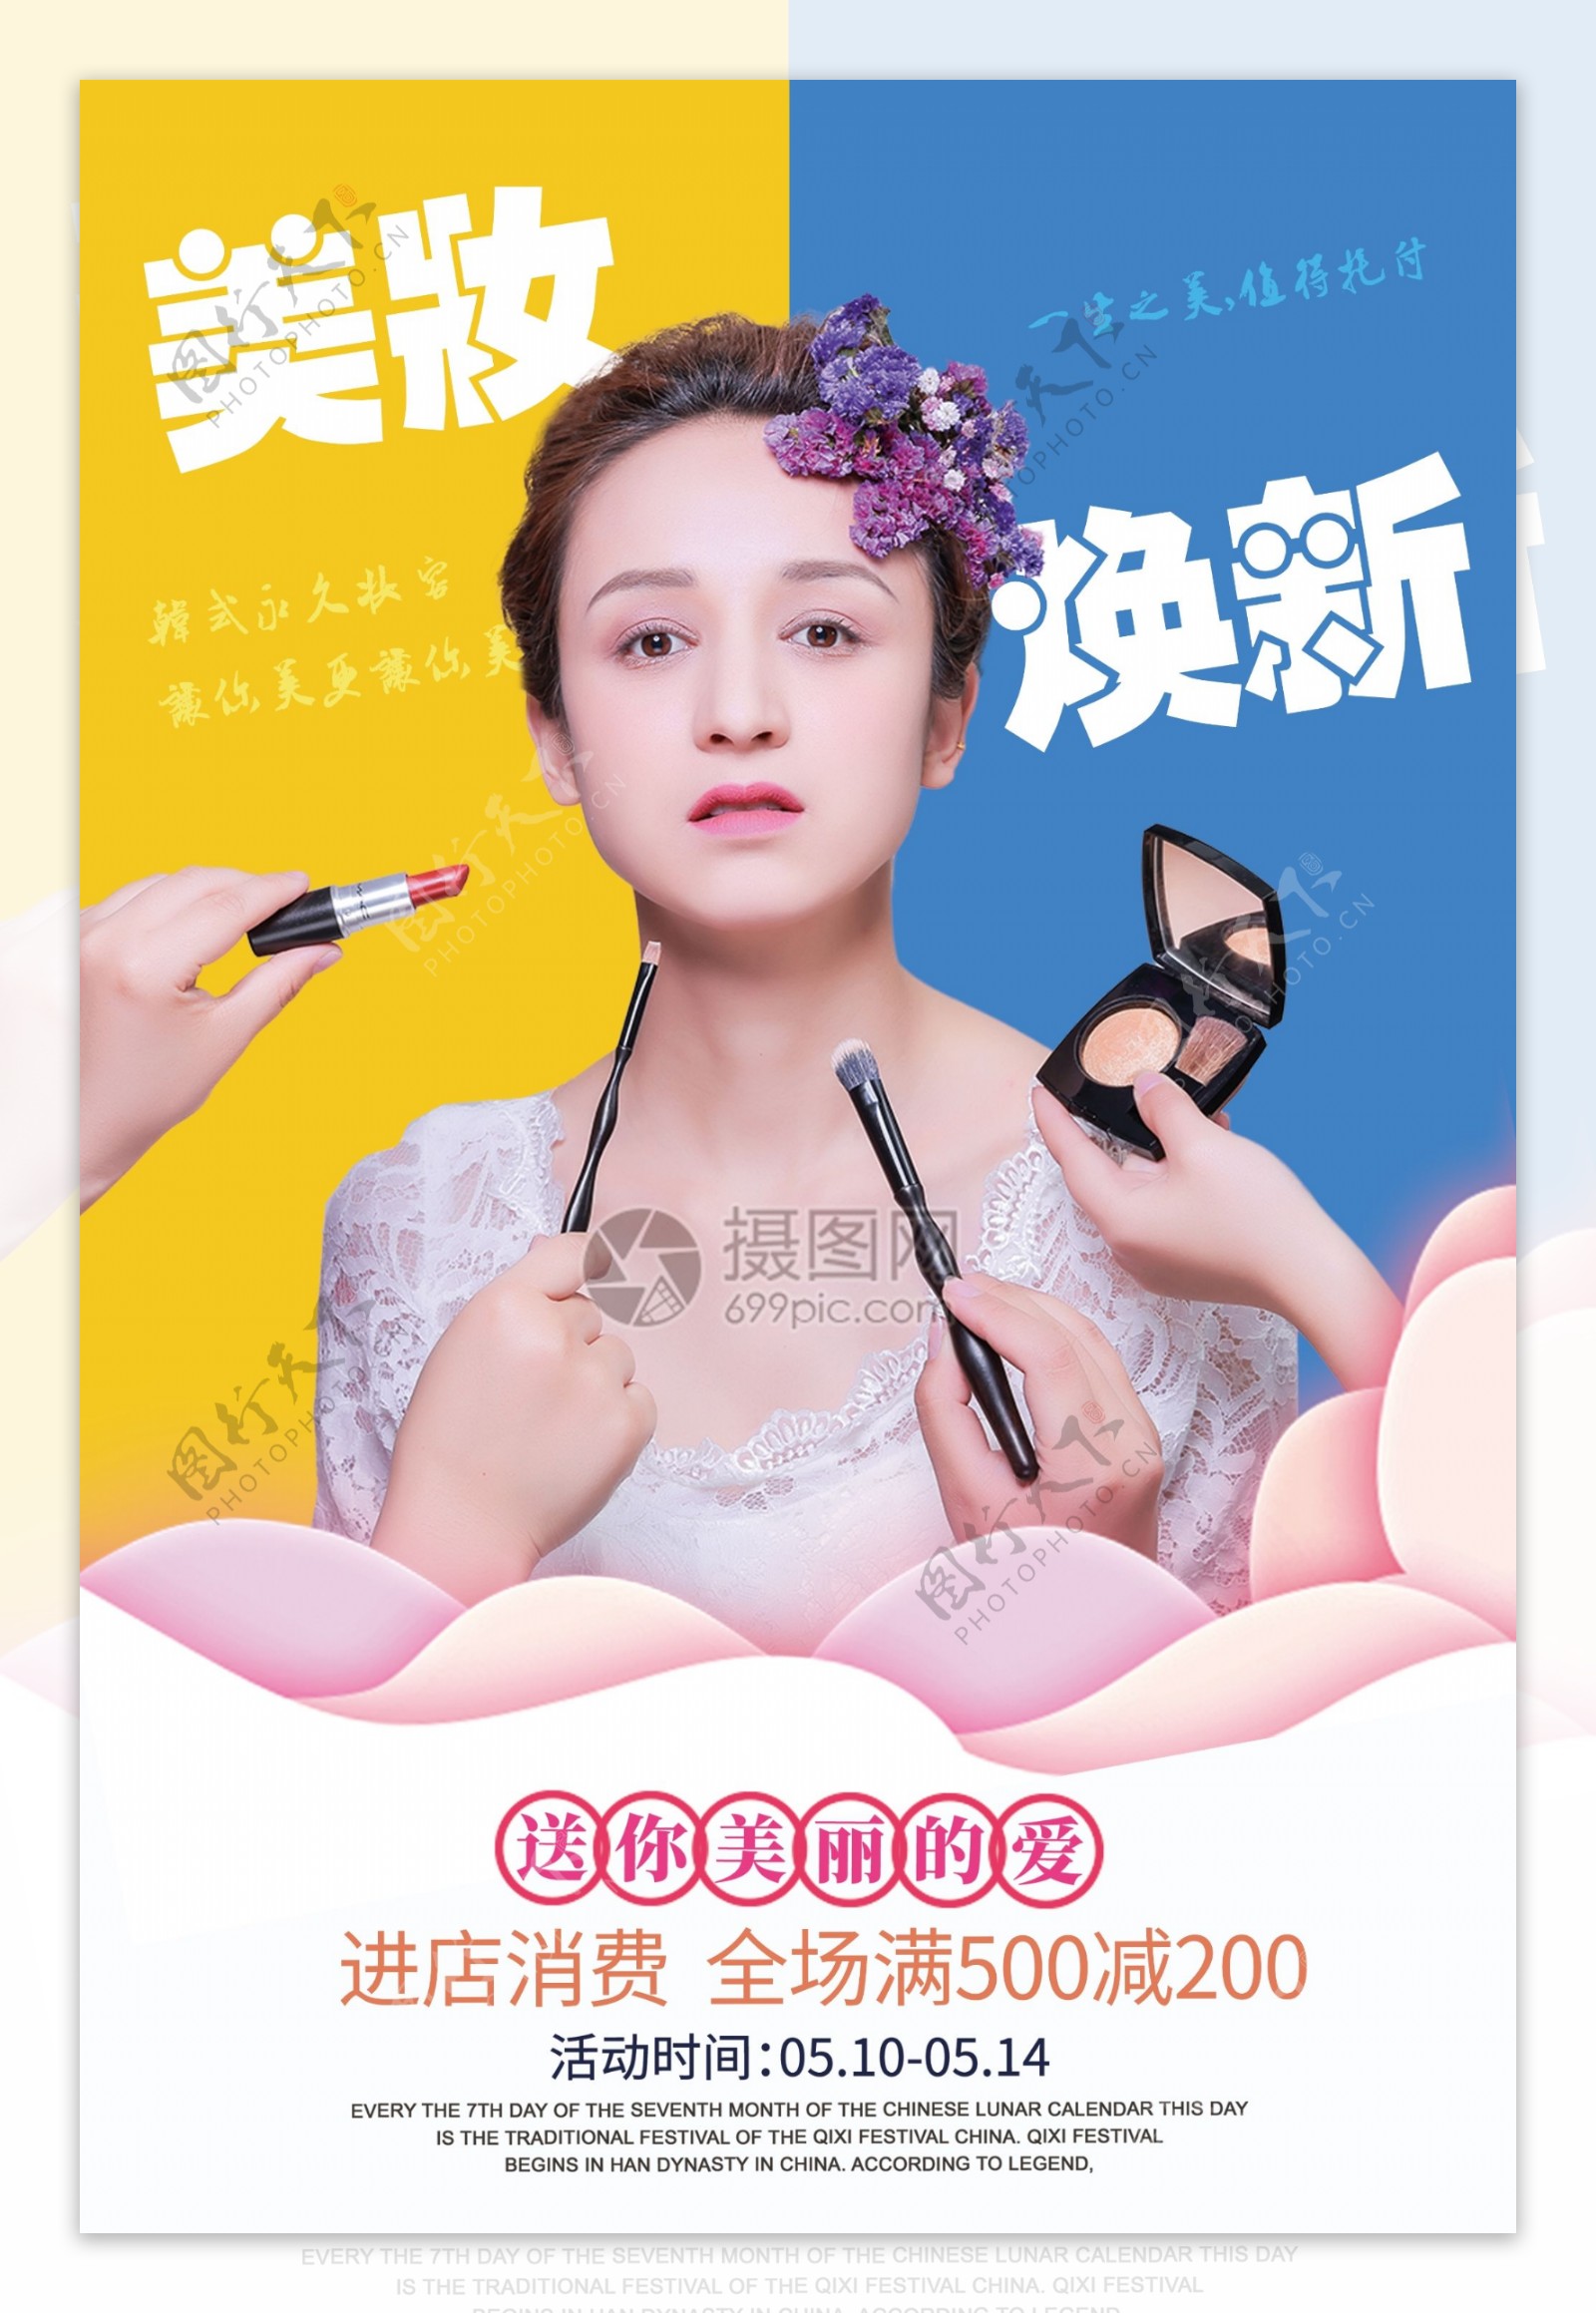 美妆焕新化妆品促销海报